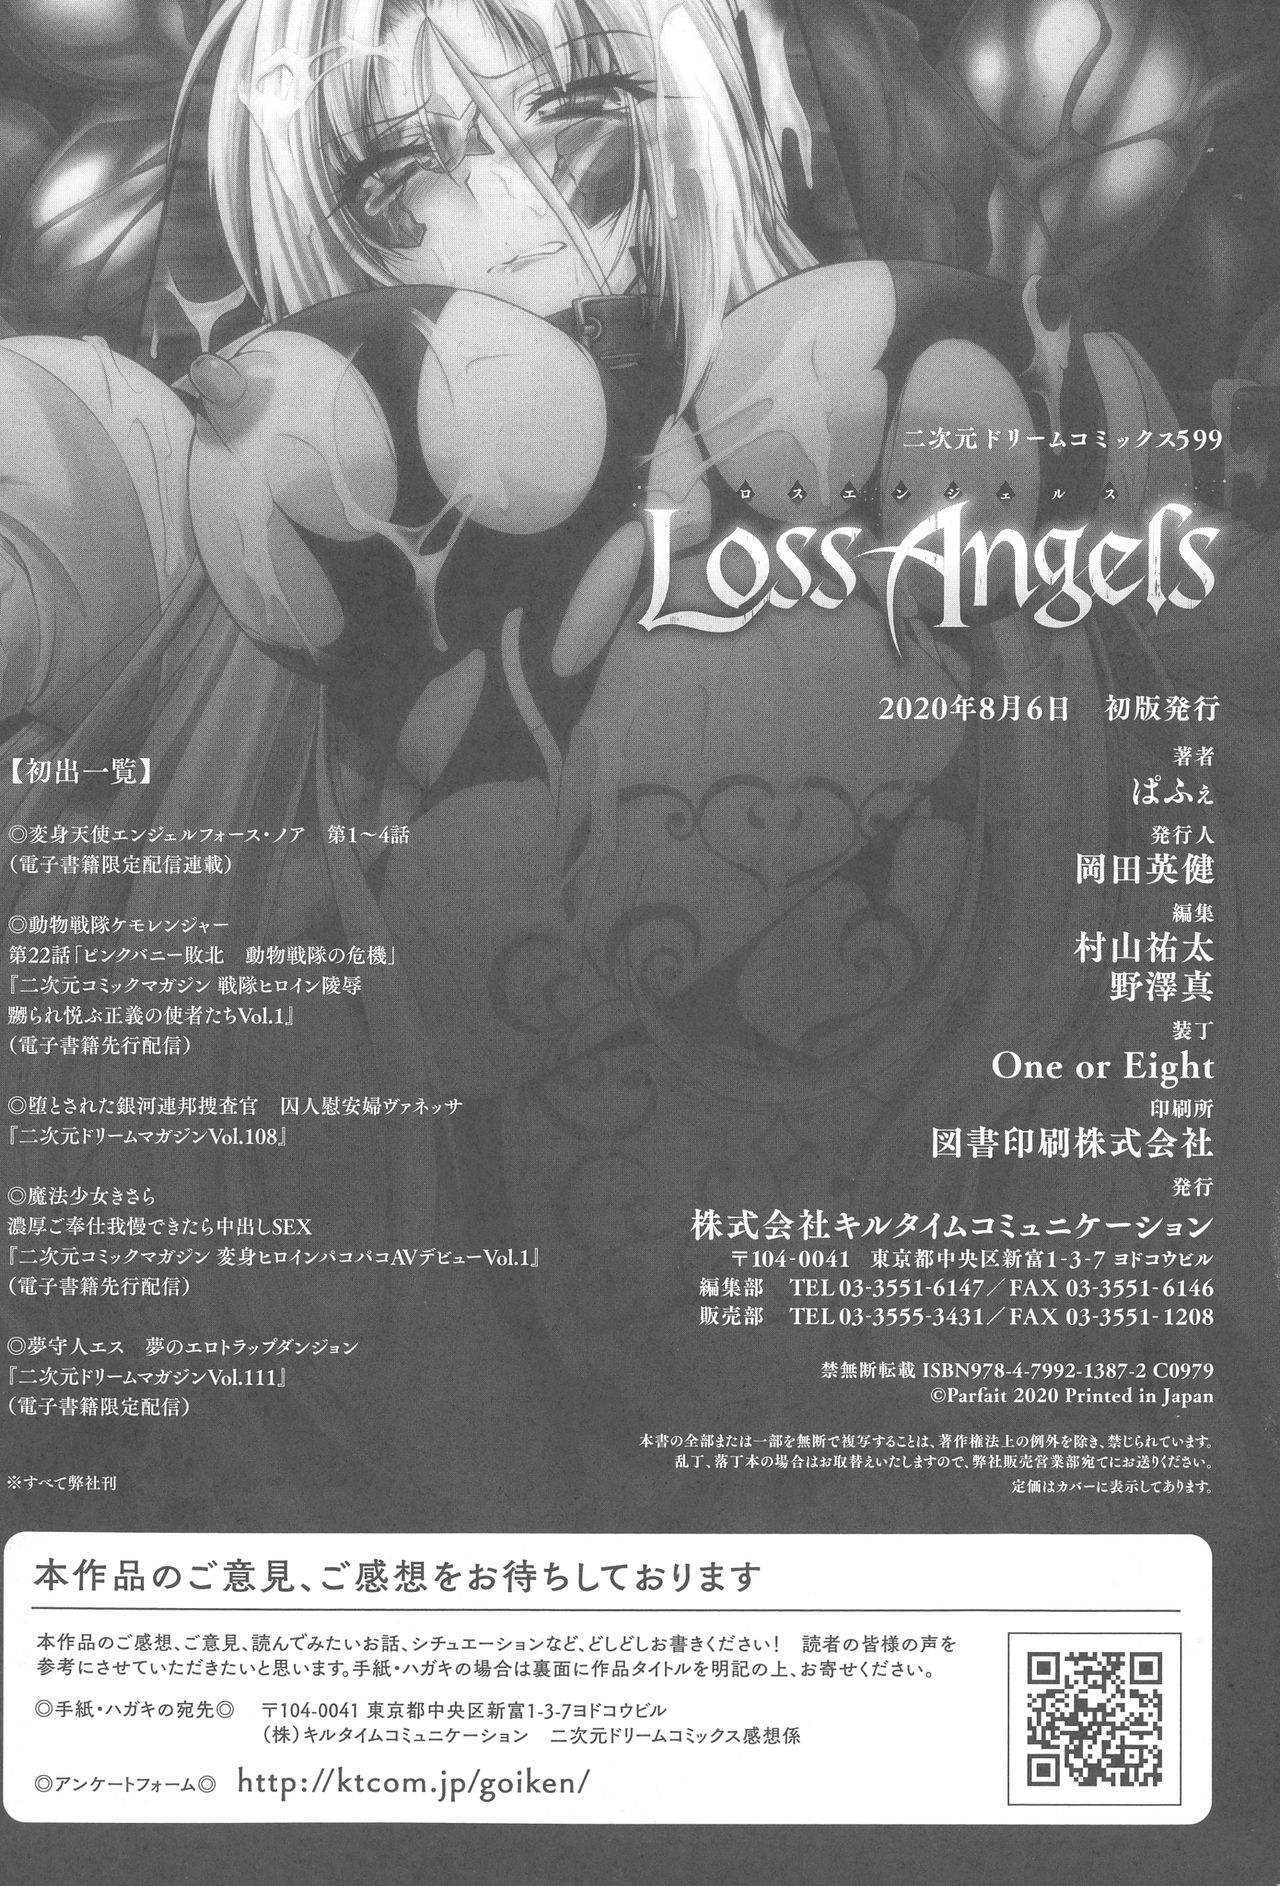 [ぱふぇ] Loss Angels